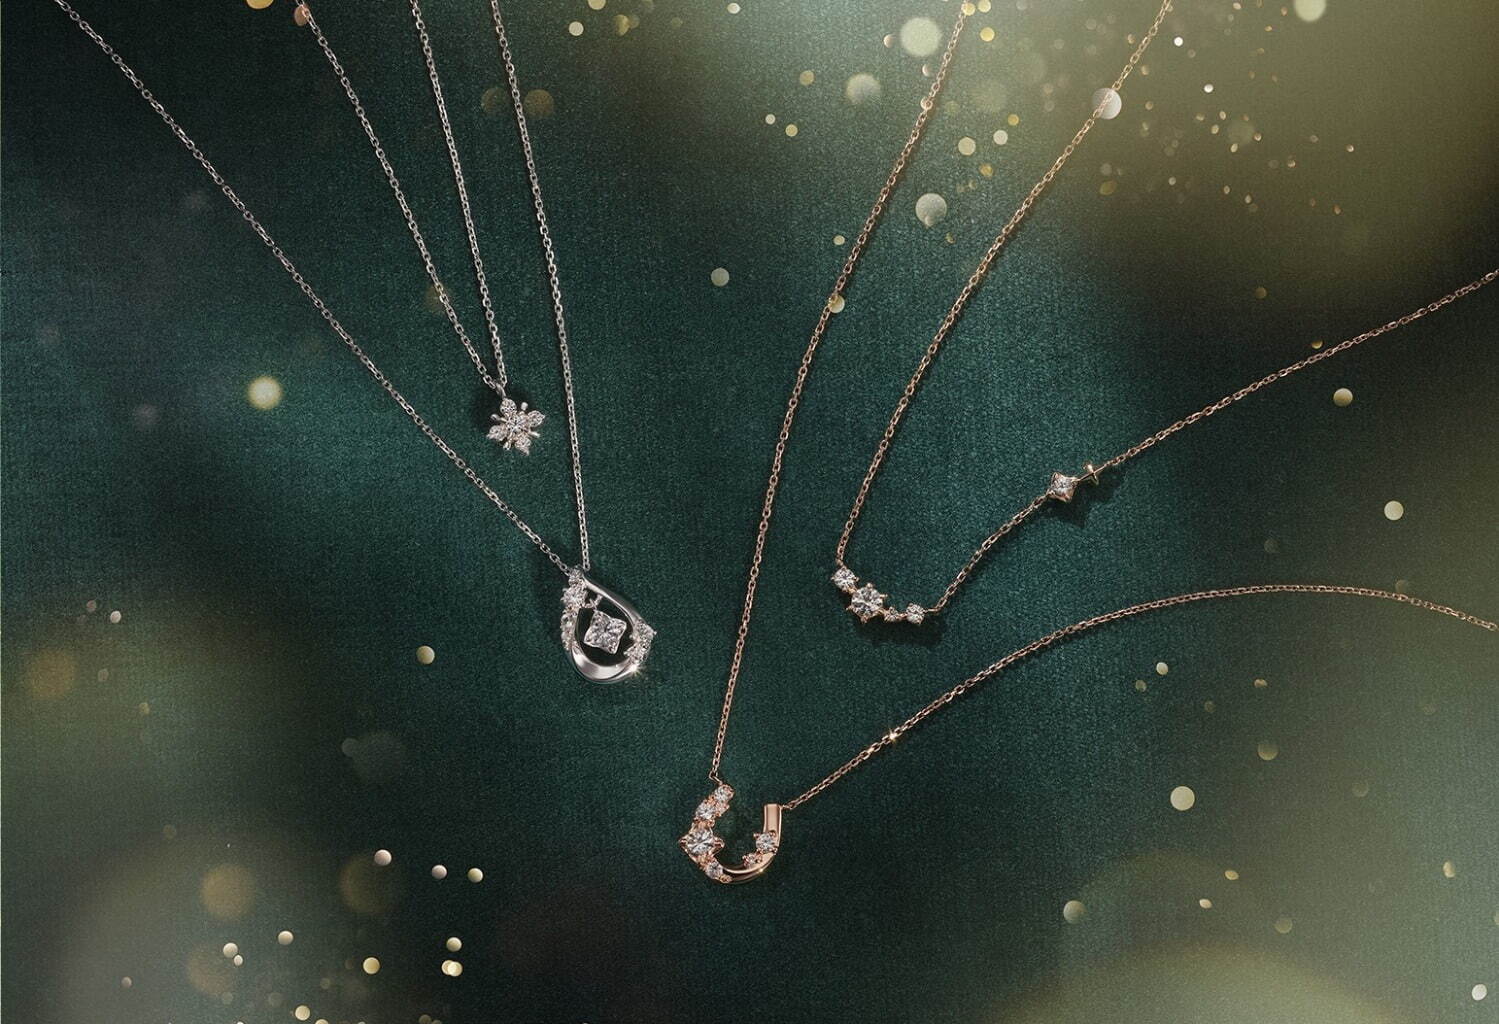 左から)SV(Rhc) Necklace set/Synthetic Sapphire 18,700円
SV(PGc) Necklace set/Synthetic Sapphire 18,700円